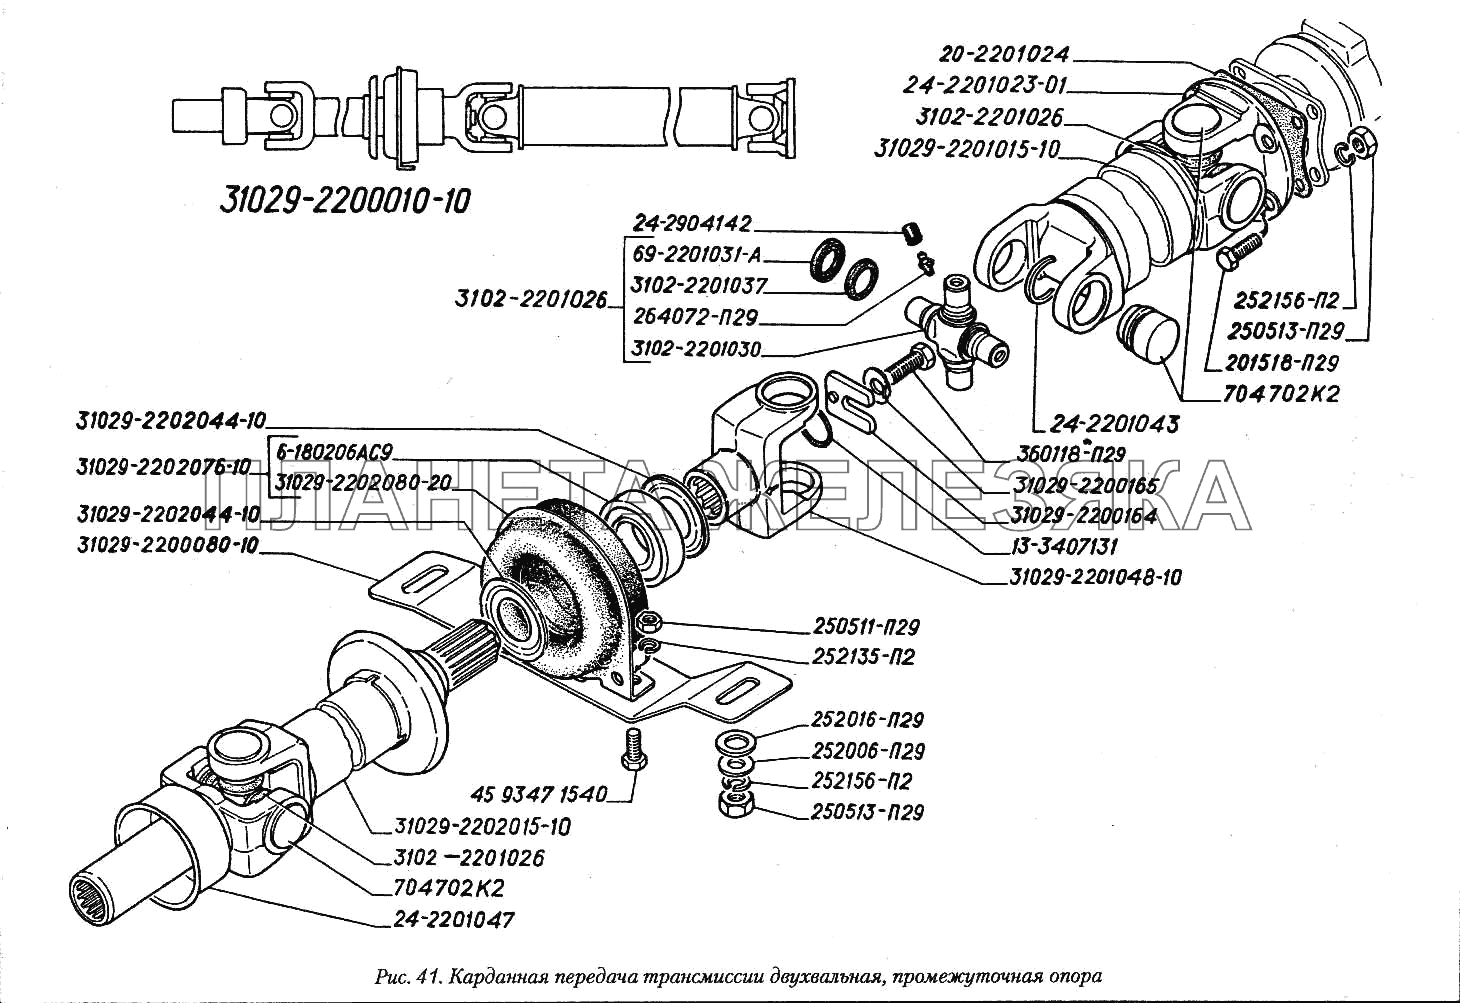 Карданная передача трансмиссии двухвальная, промежуточная опора ГАЗ-3110